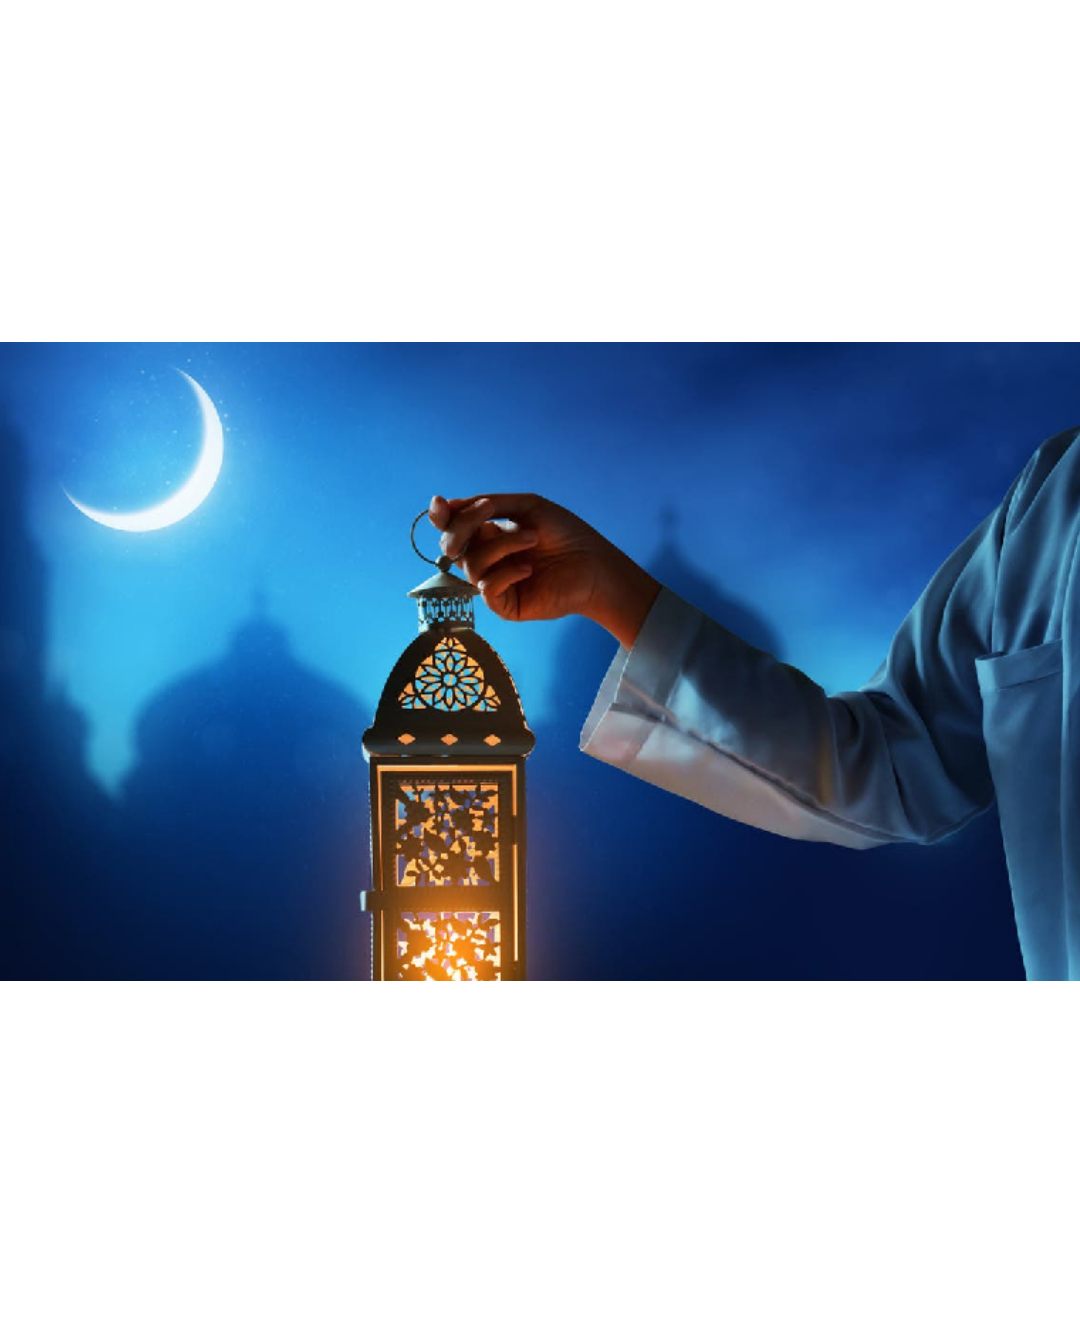 فانوس رمضان .. تاريخه وسبب تسميته